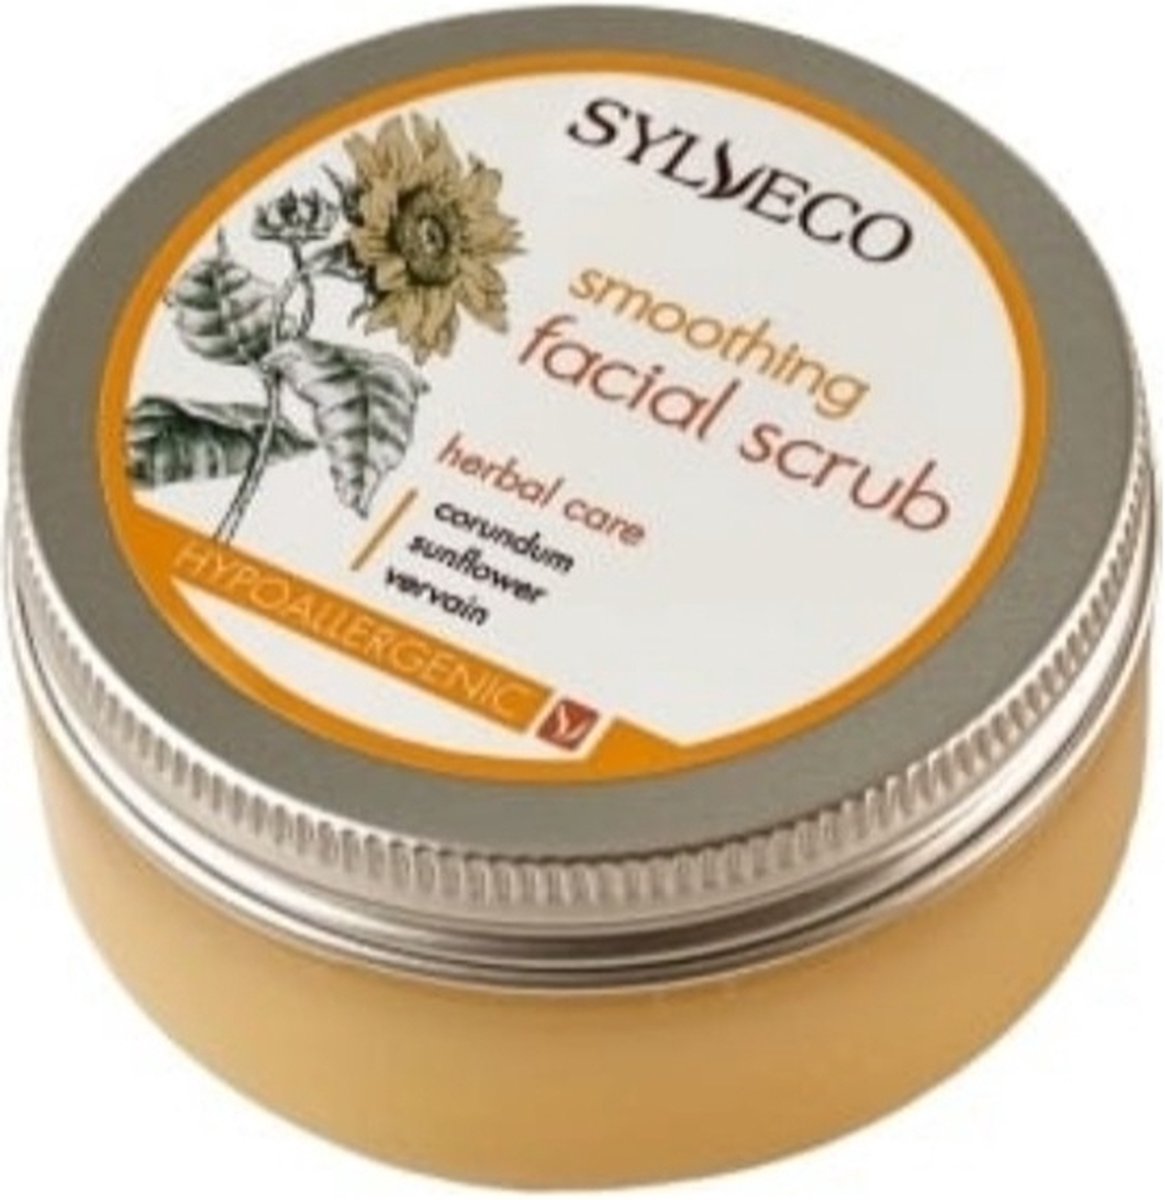 Sylveco- Smoothing facial scrub - Hypoalergeen - Gezicht scrub